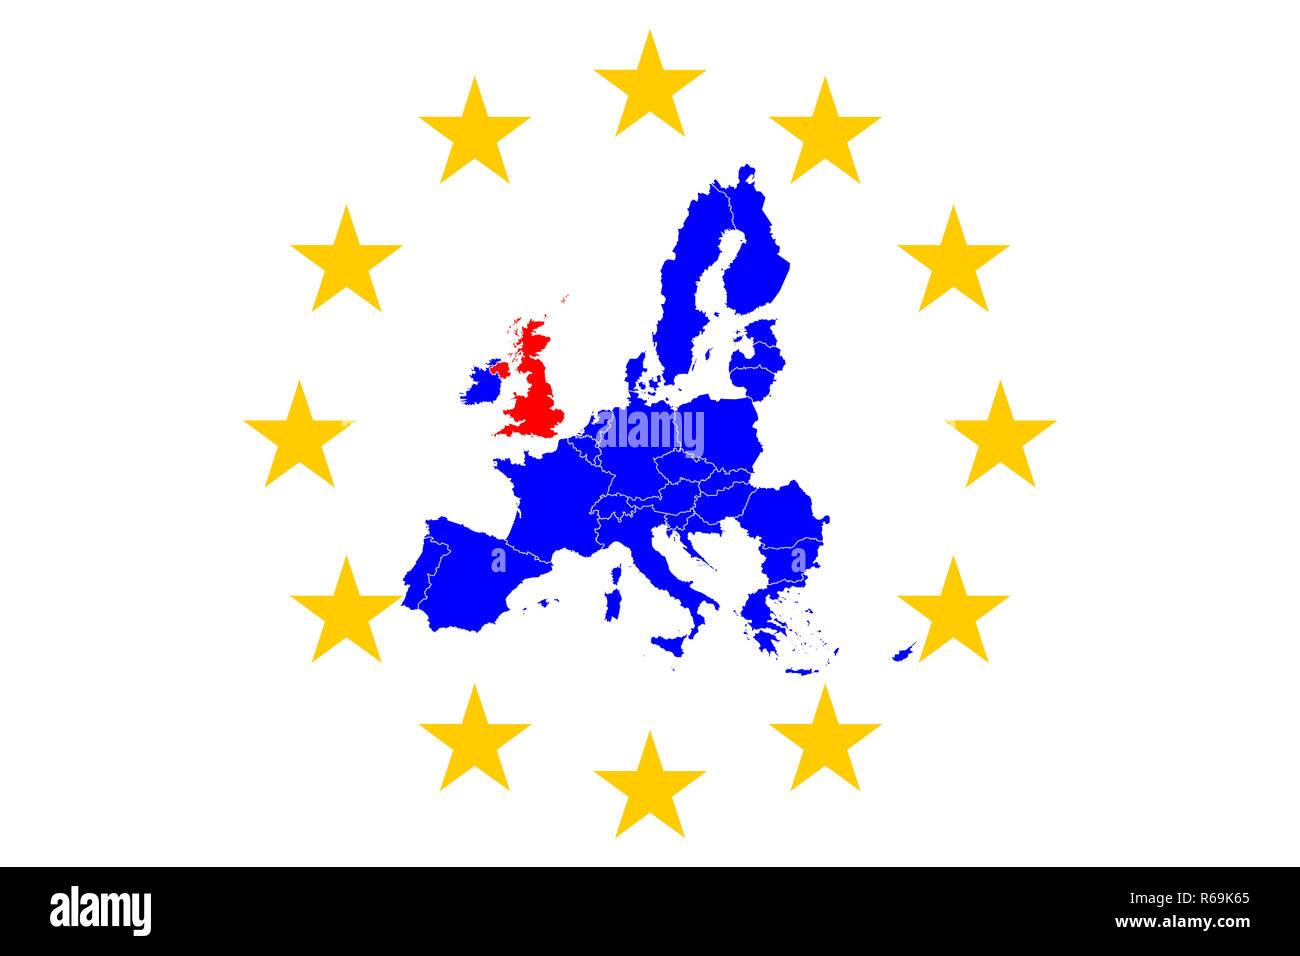 Brexit europäische Karte mit europäischen Sterne Kreis Stockfoto